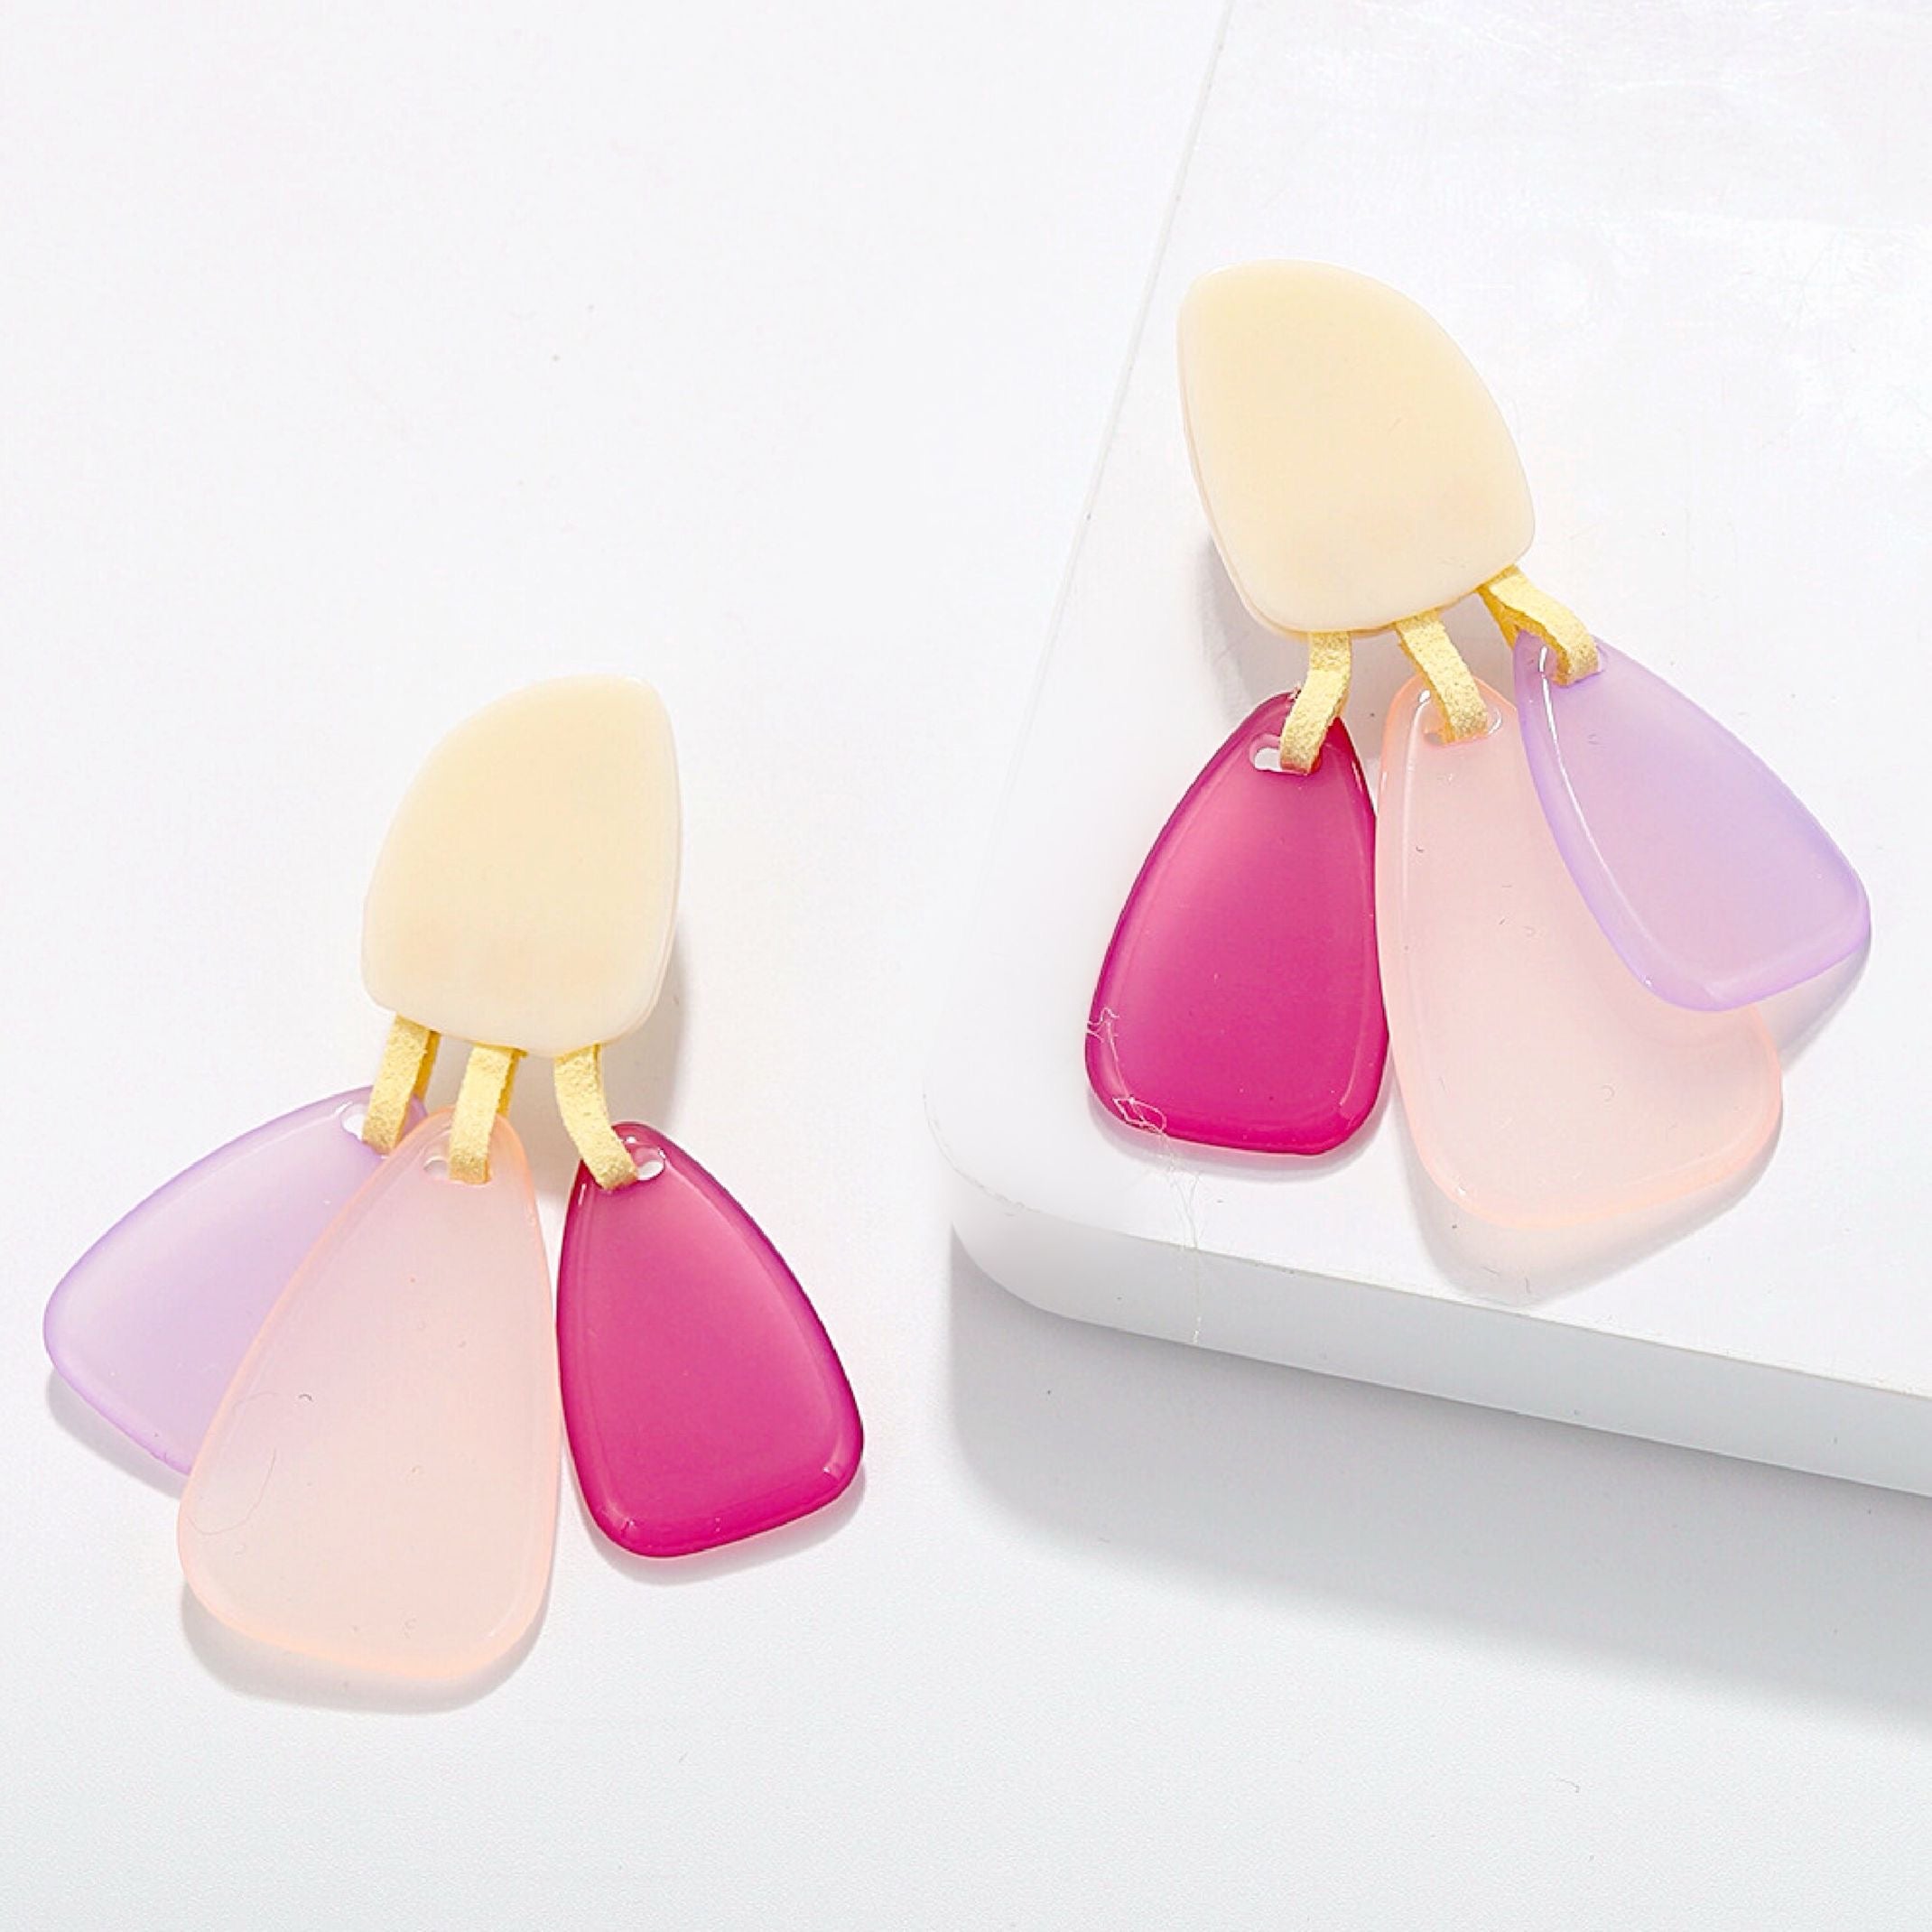 Pink earrings 